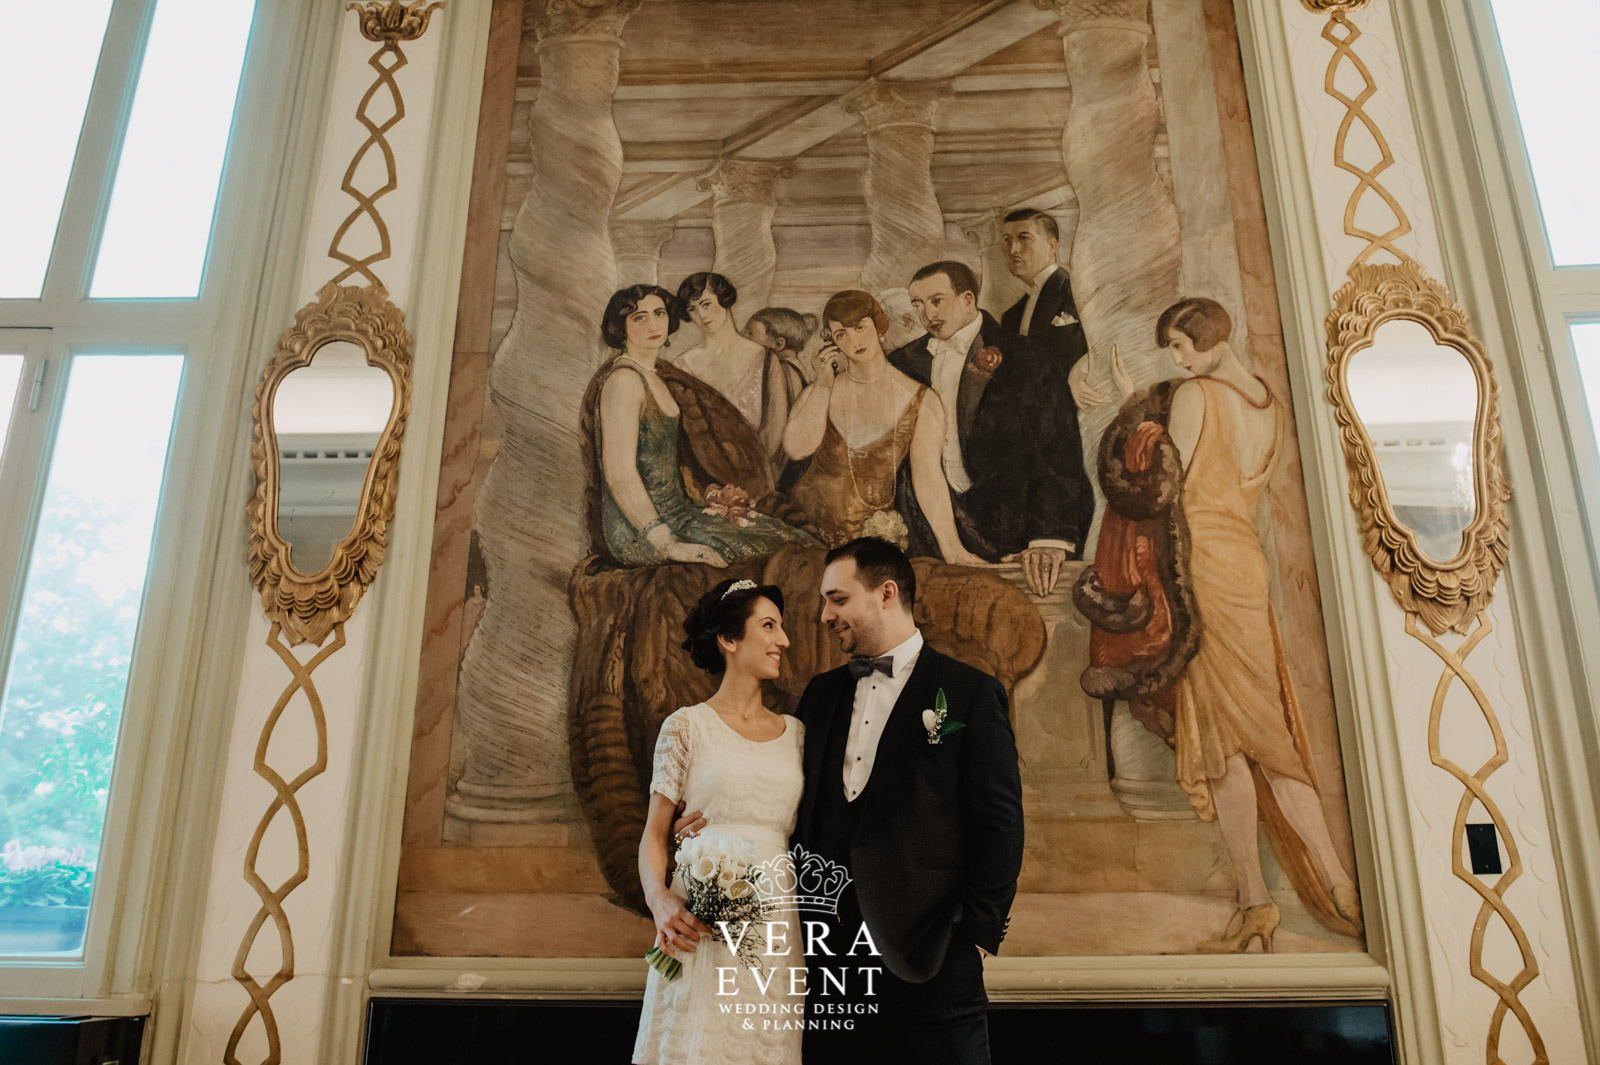 Hilal & Cem #yurtdışında düğün #roma'da düğün